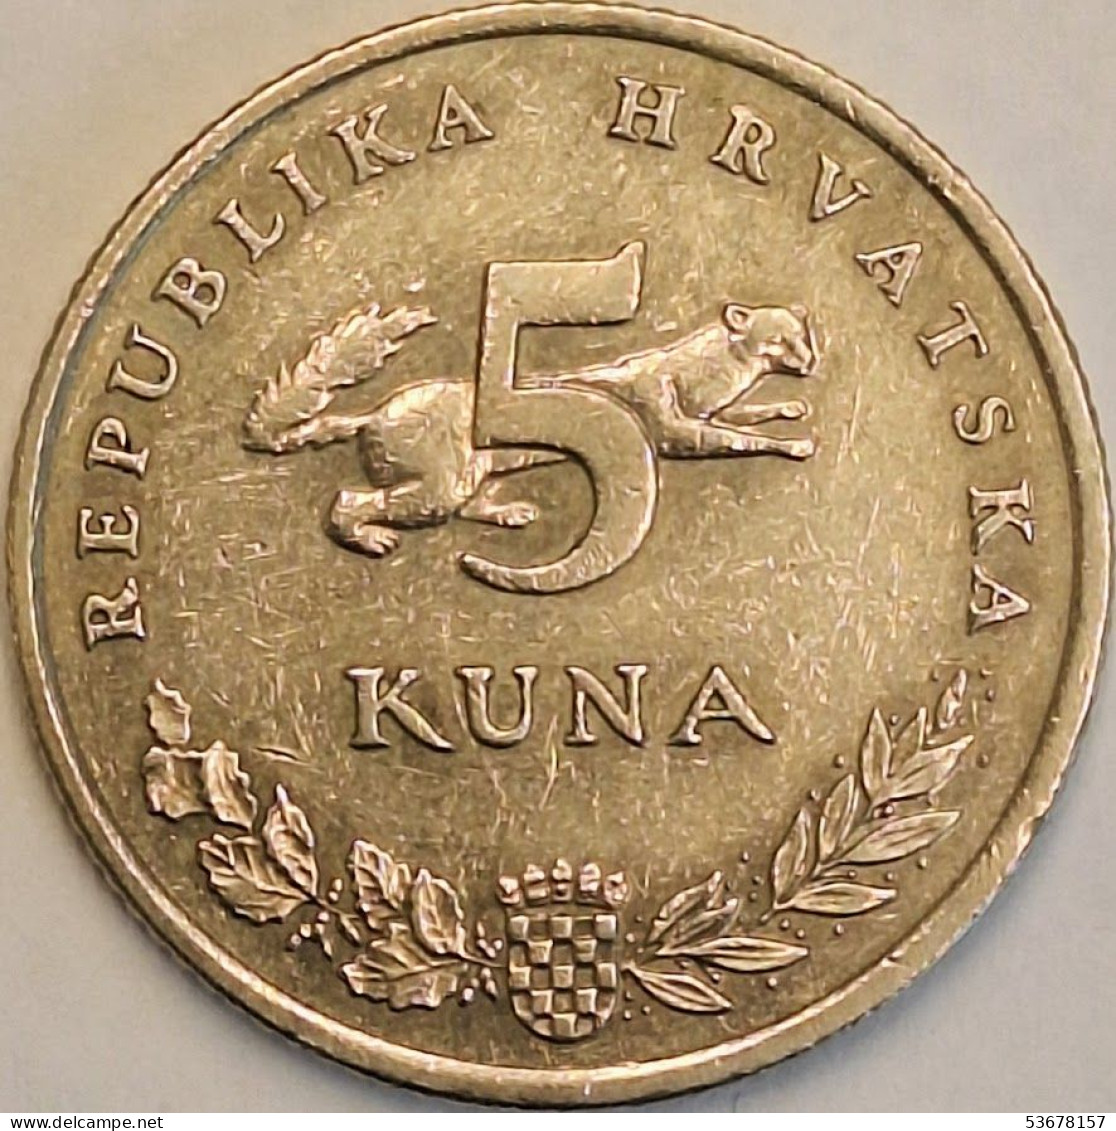 Croatia - 5 Kuna 2000, KM# 23 (#3570) - Croatia